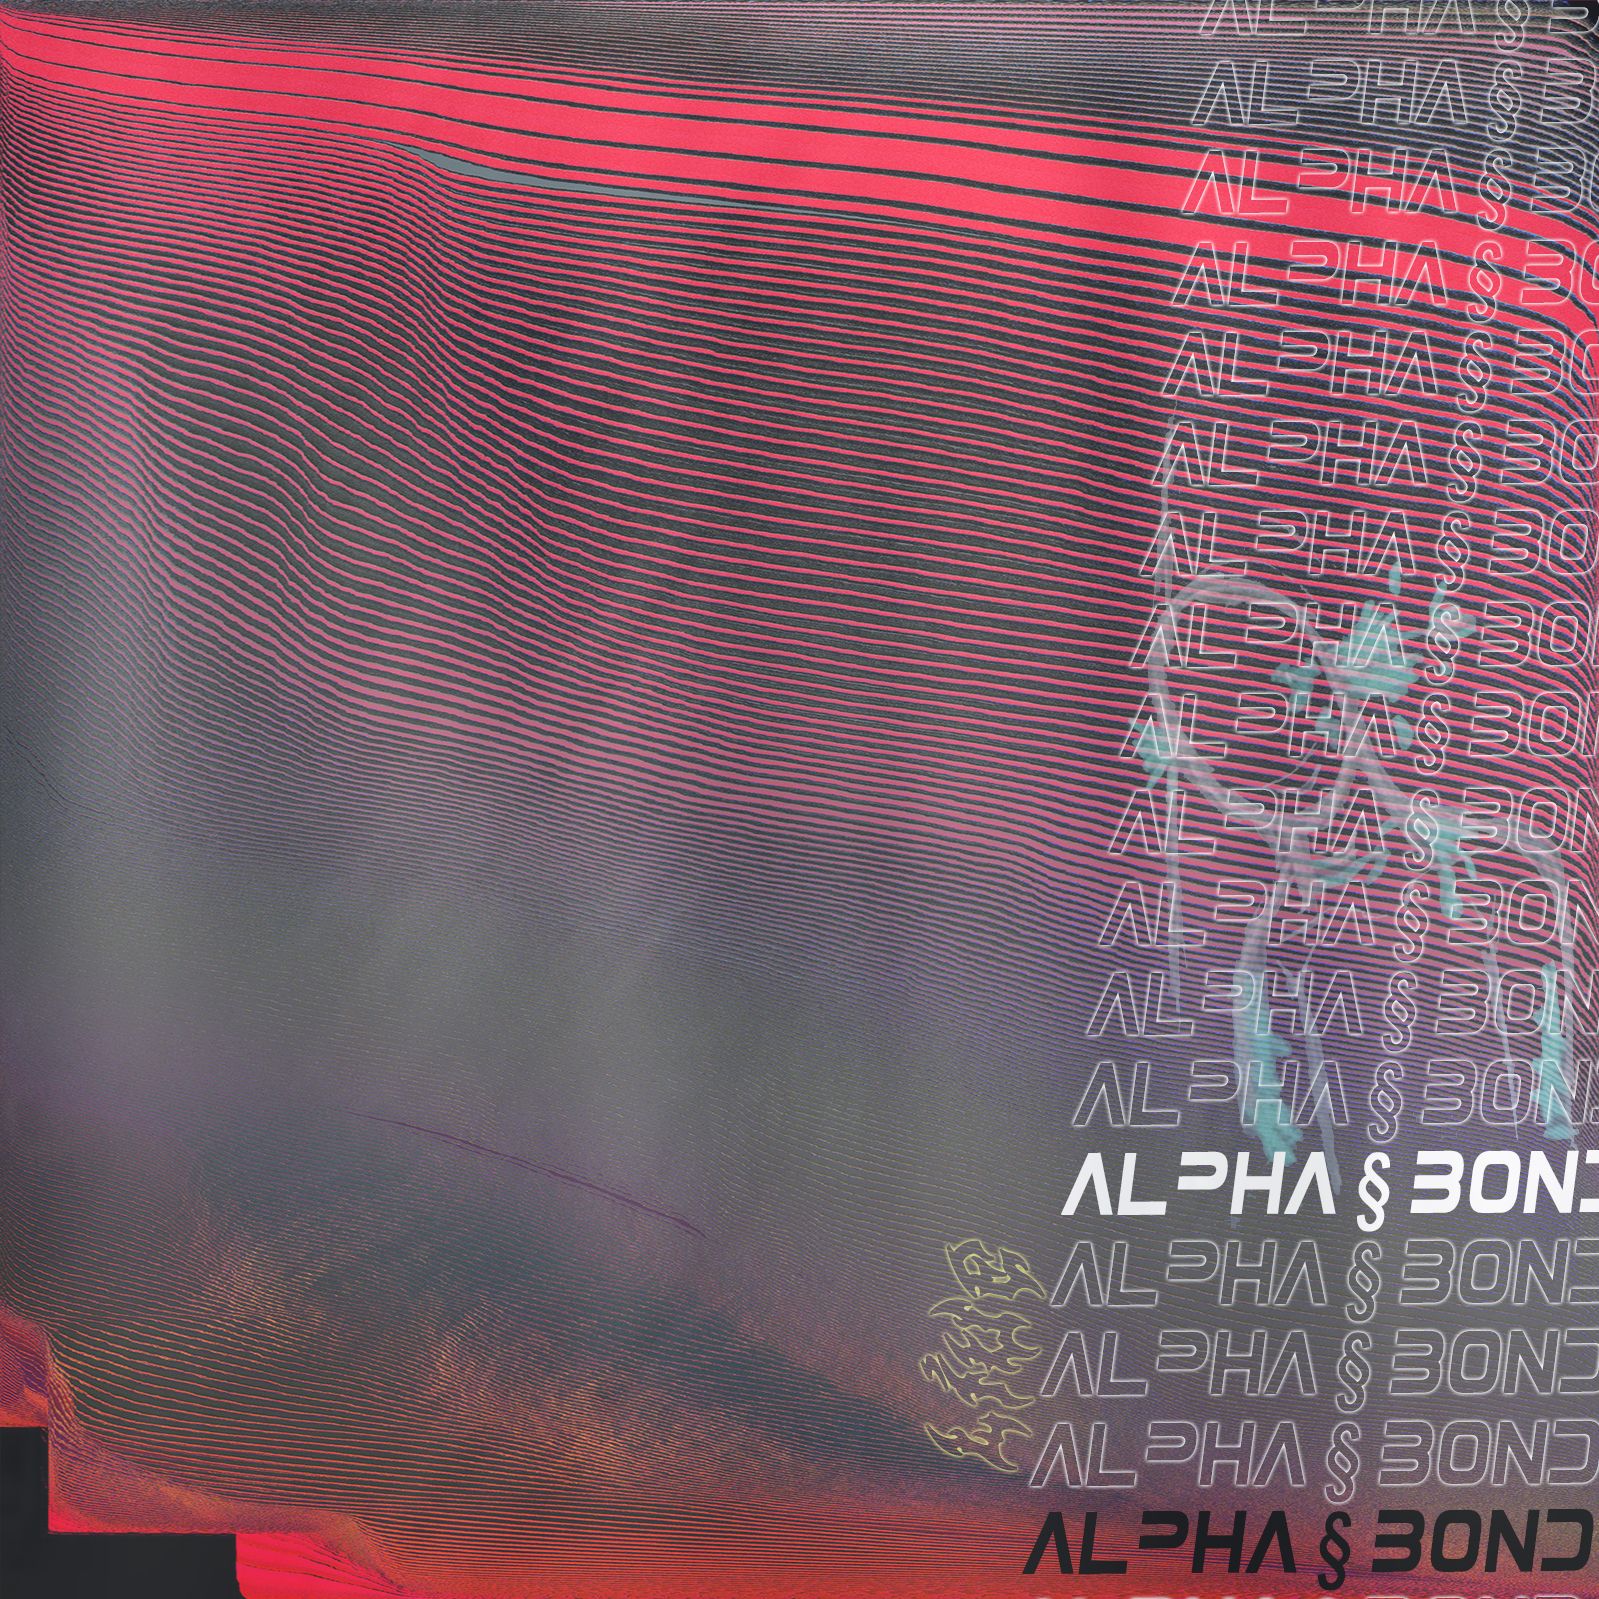 డౌన్లోడ్ alpha § bond